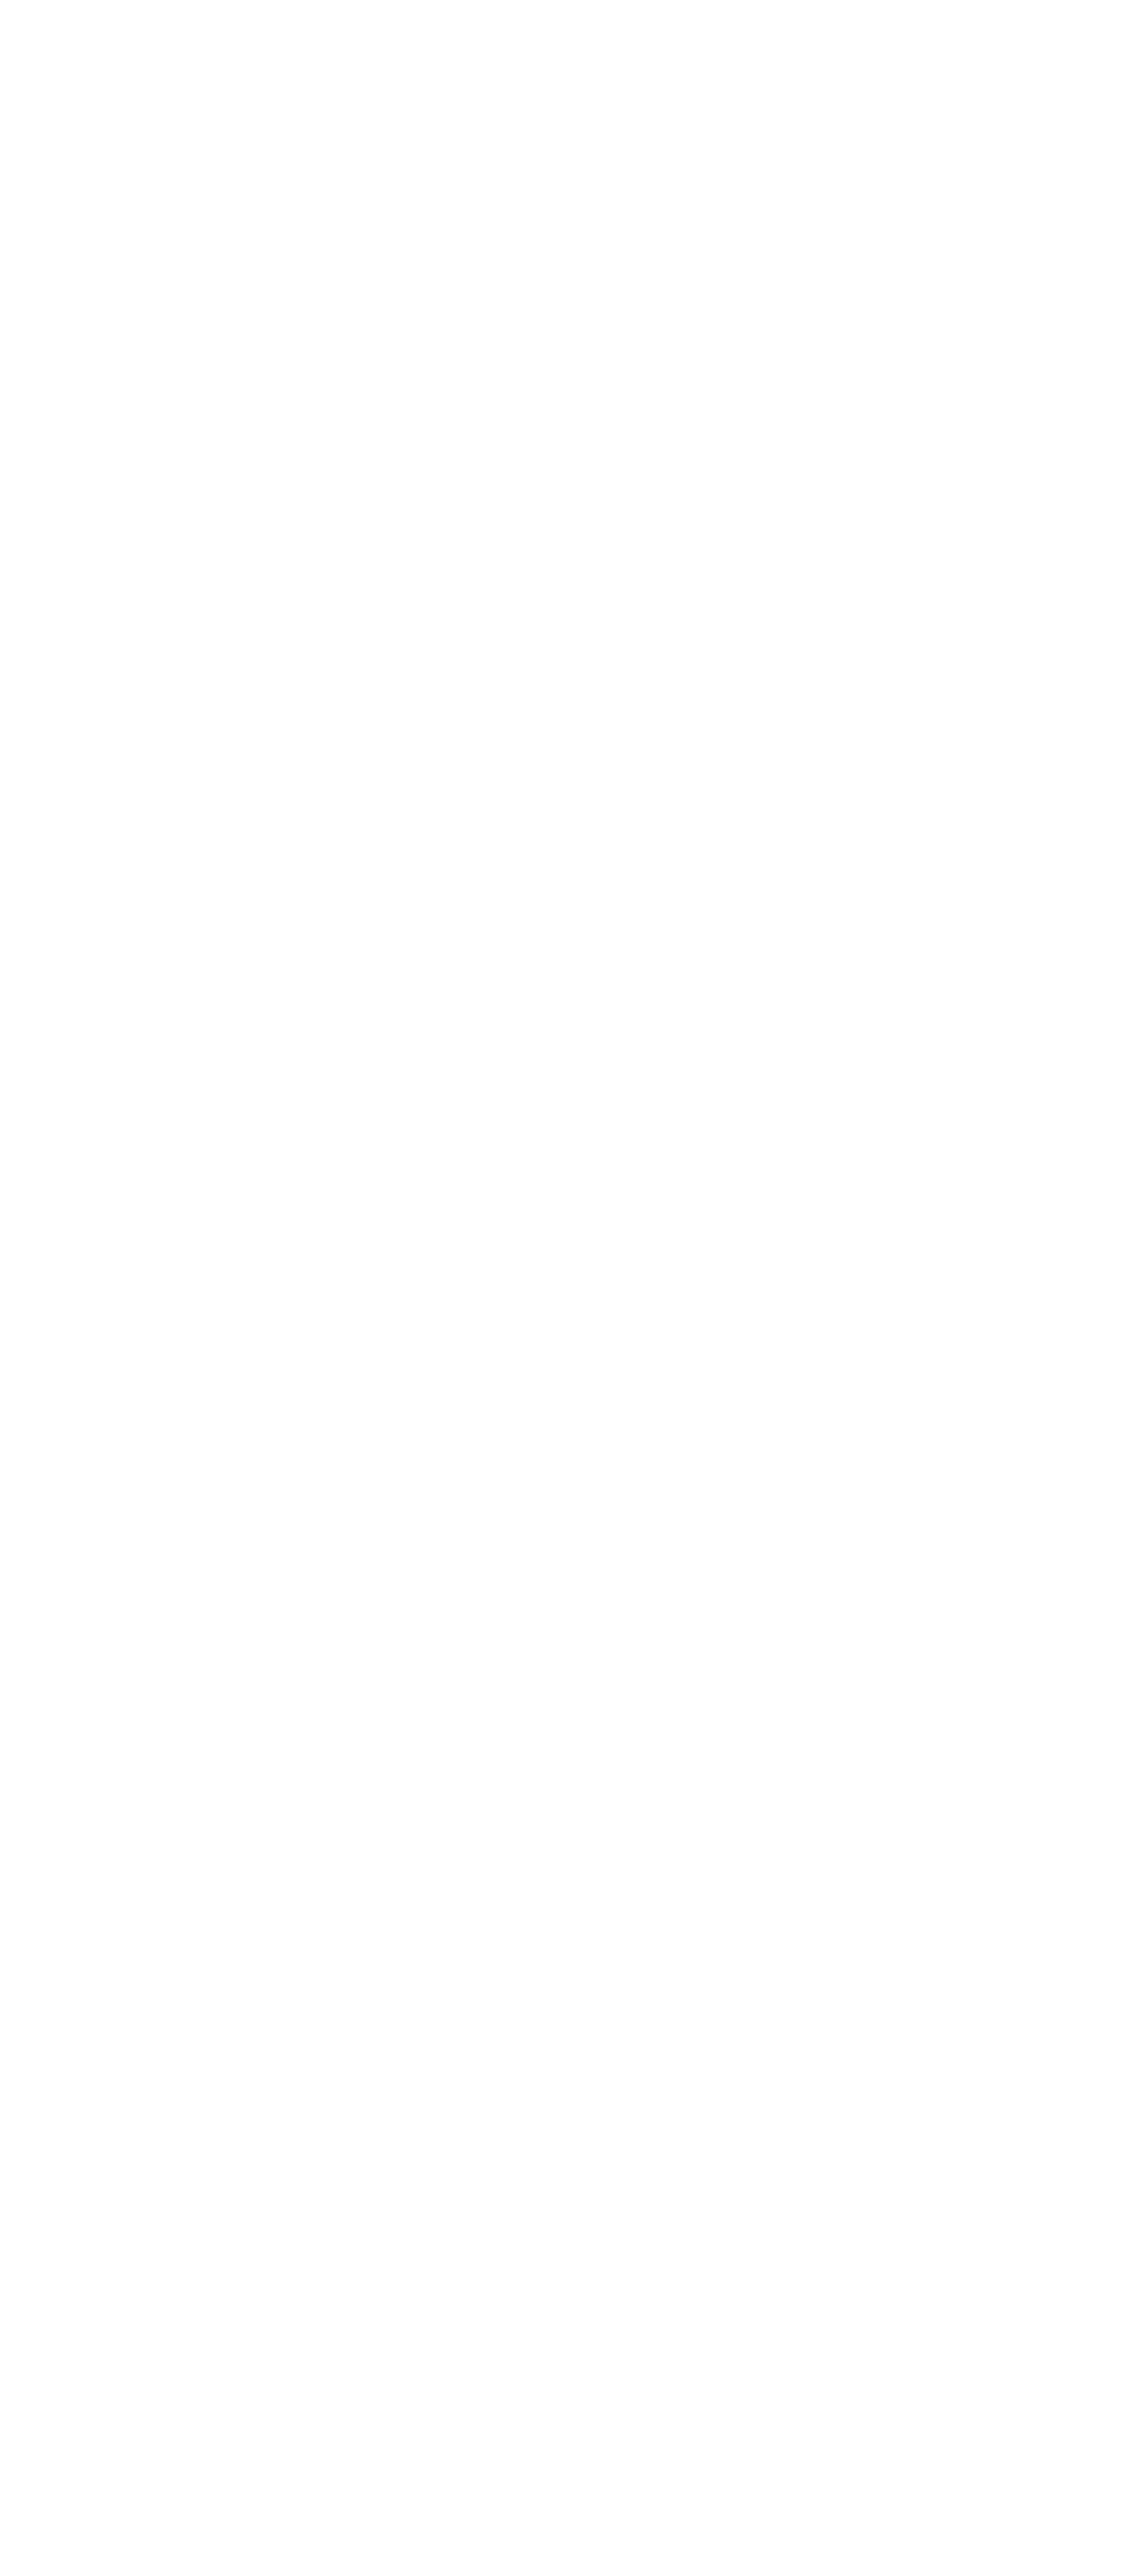 German Web Awards 2021 Winner Badge für Glanzbox